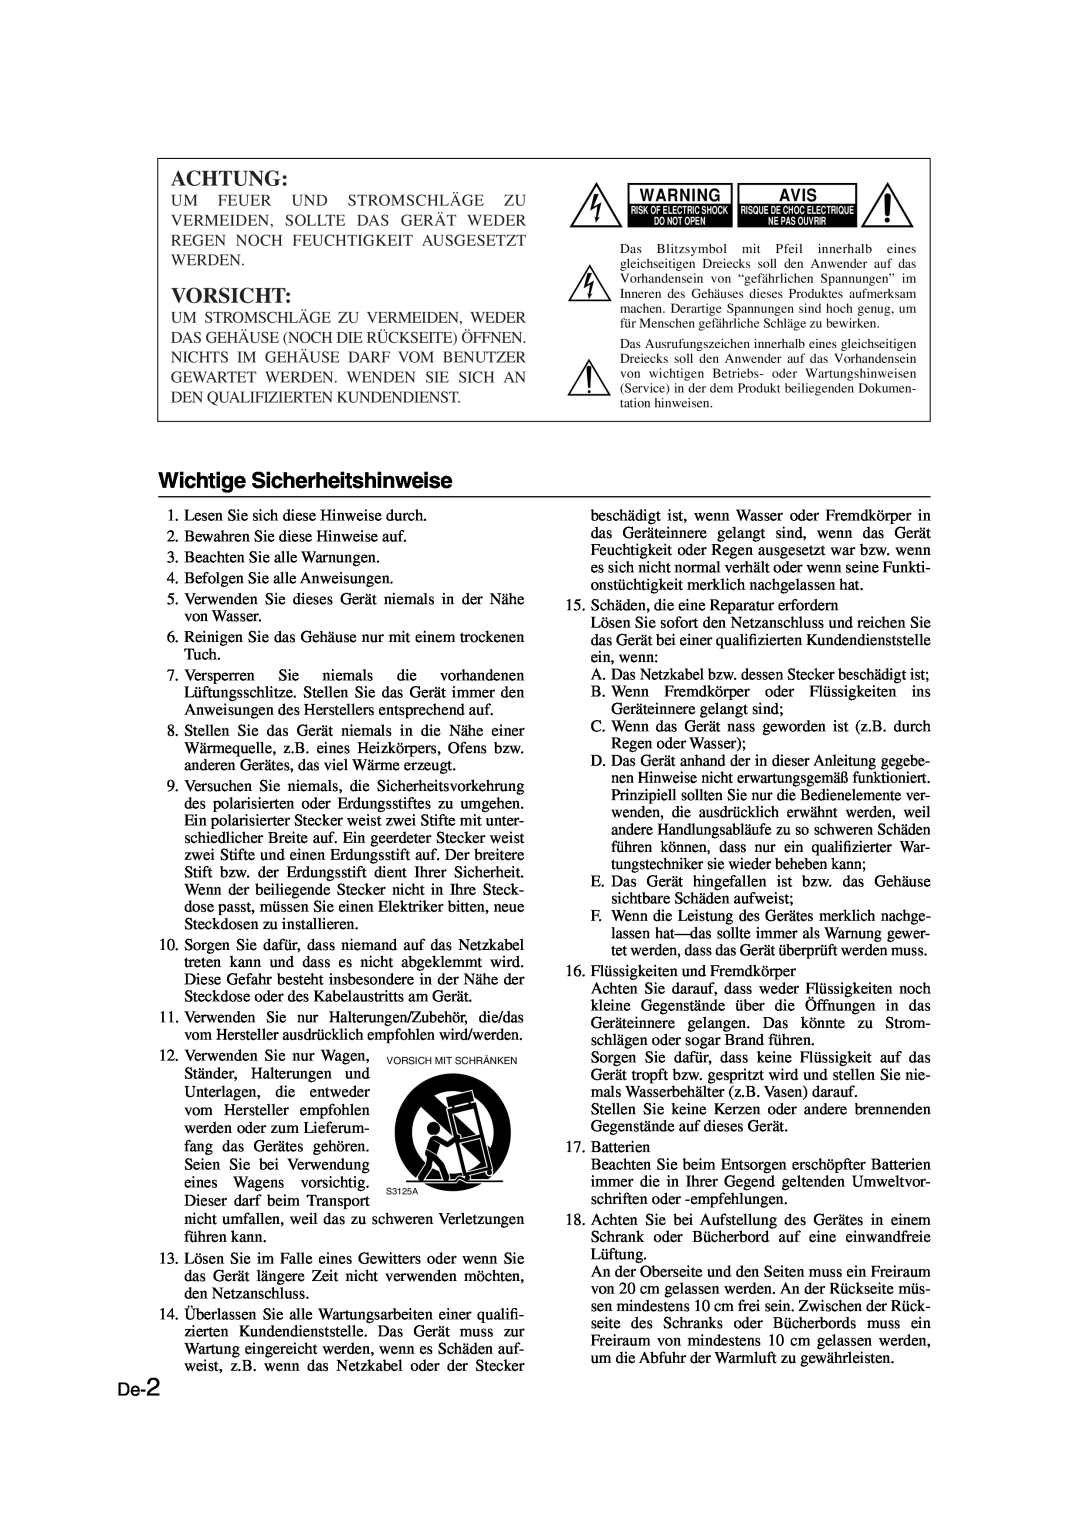 Onkyo SKS-HT530 instruction manual Achtung, Vorsicht, Wichtige Sicherheitshinweise, De-2, Avis 